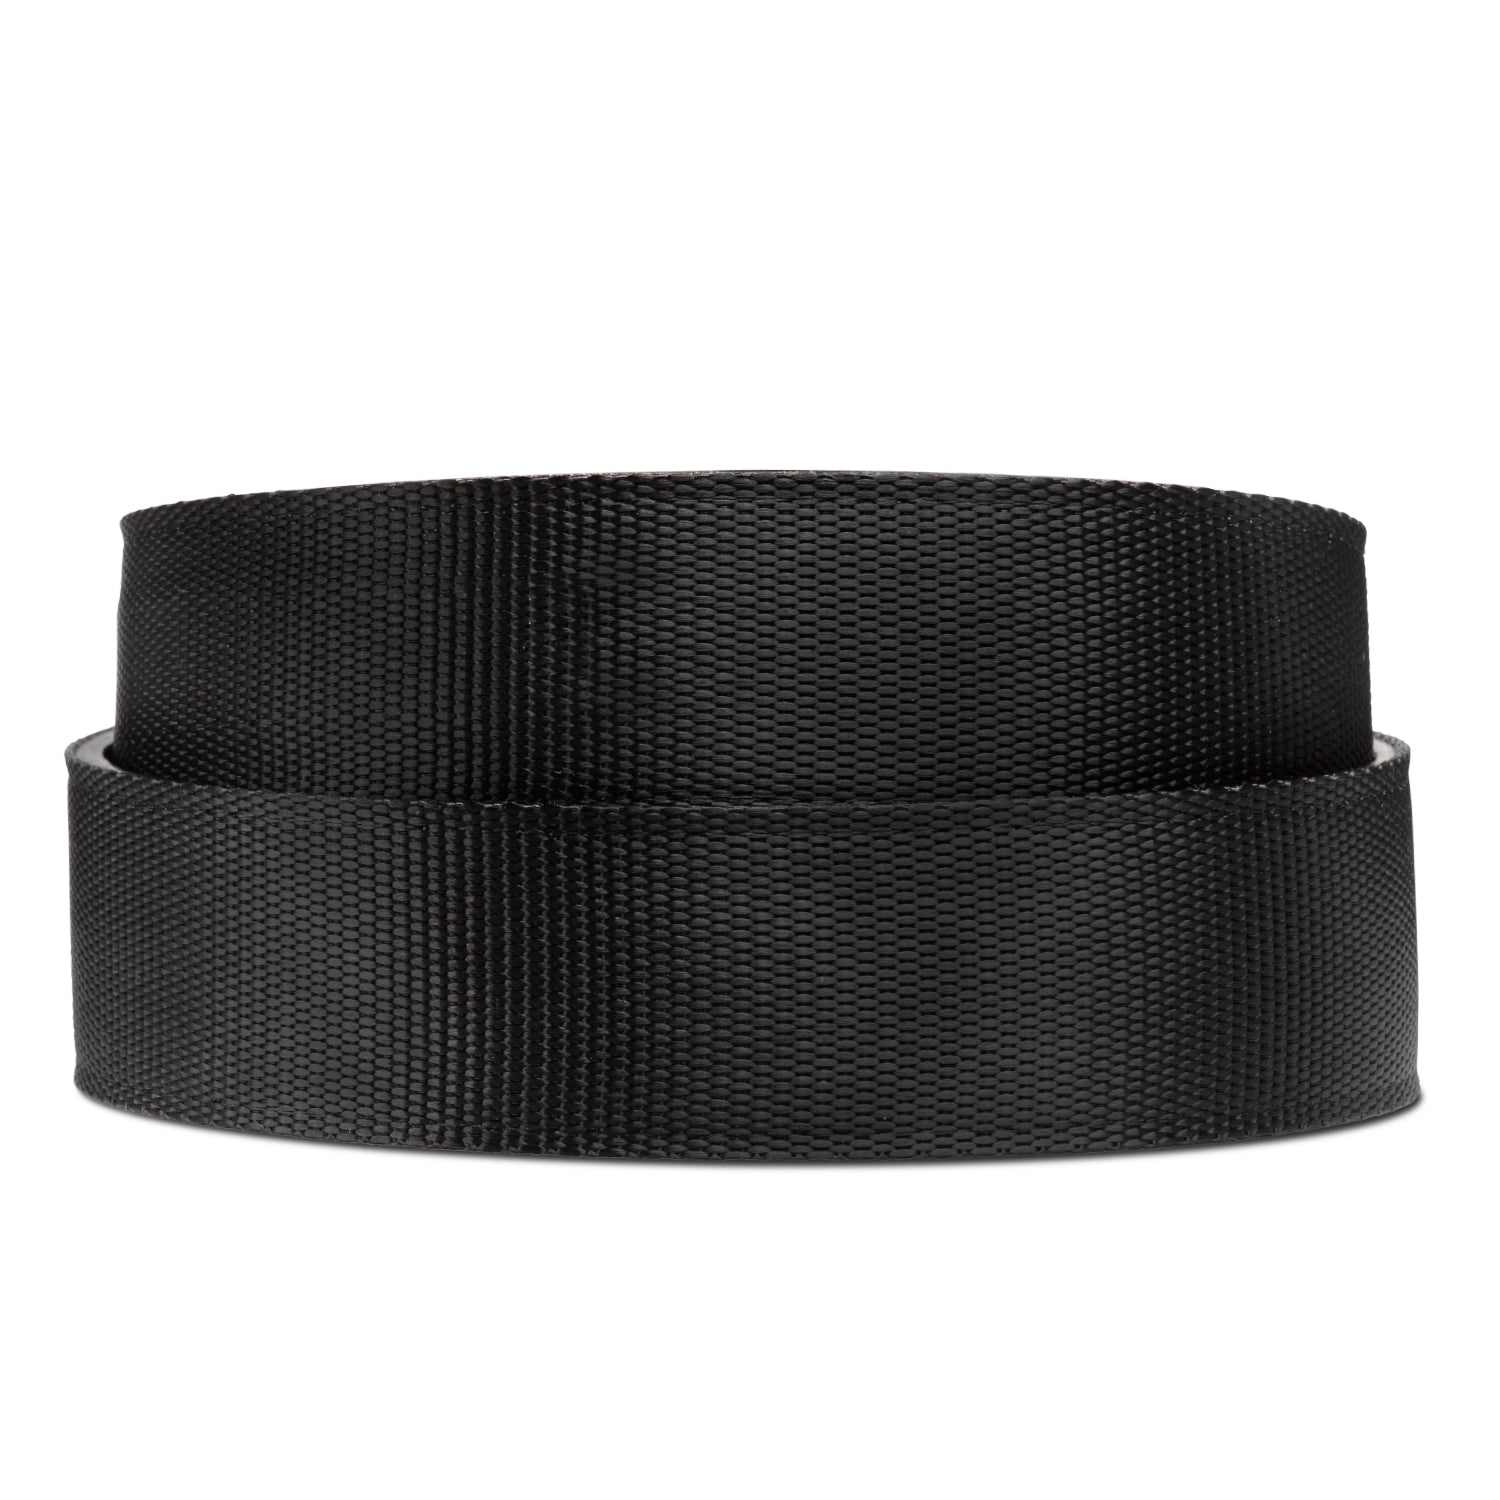 Kore Nylon Web Fashion Belts | Men's casual nylon, track belt - Kore ...